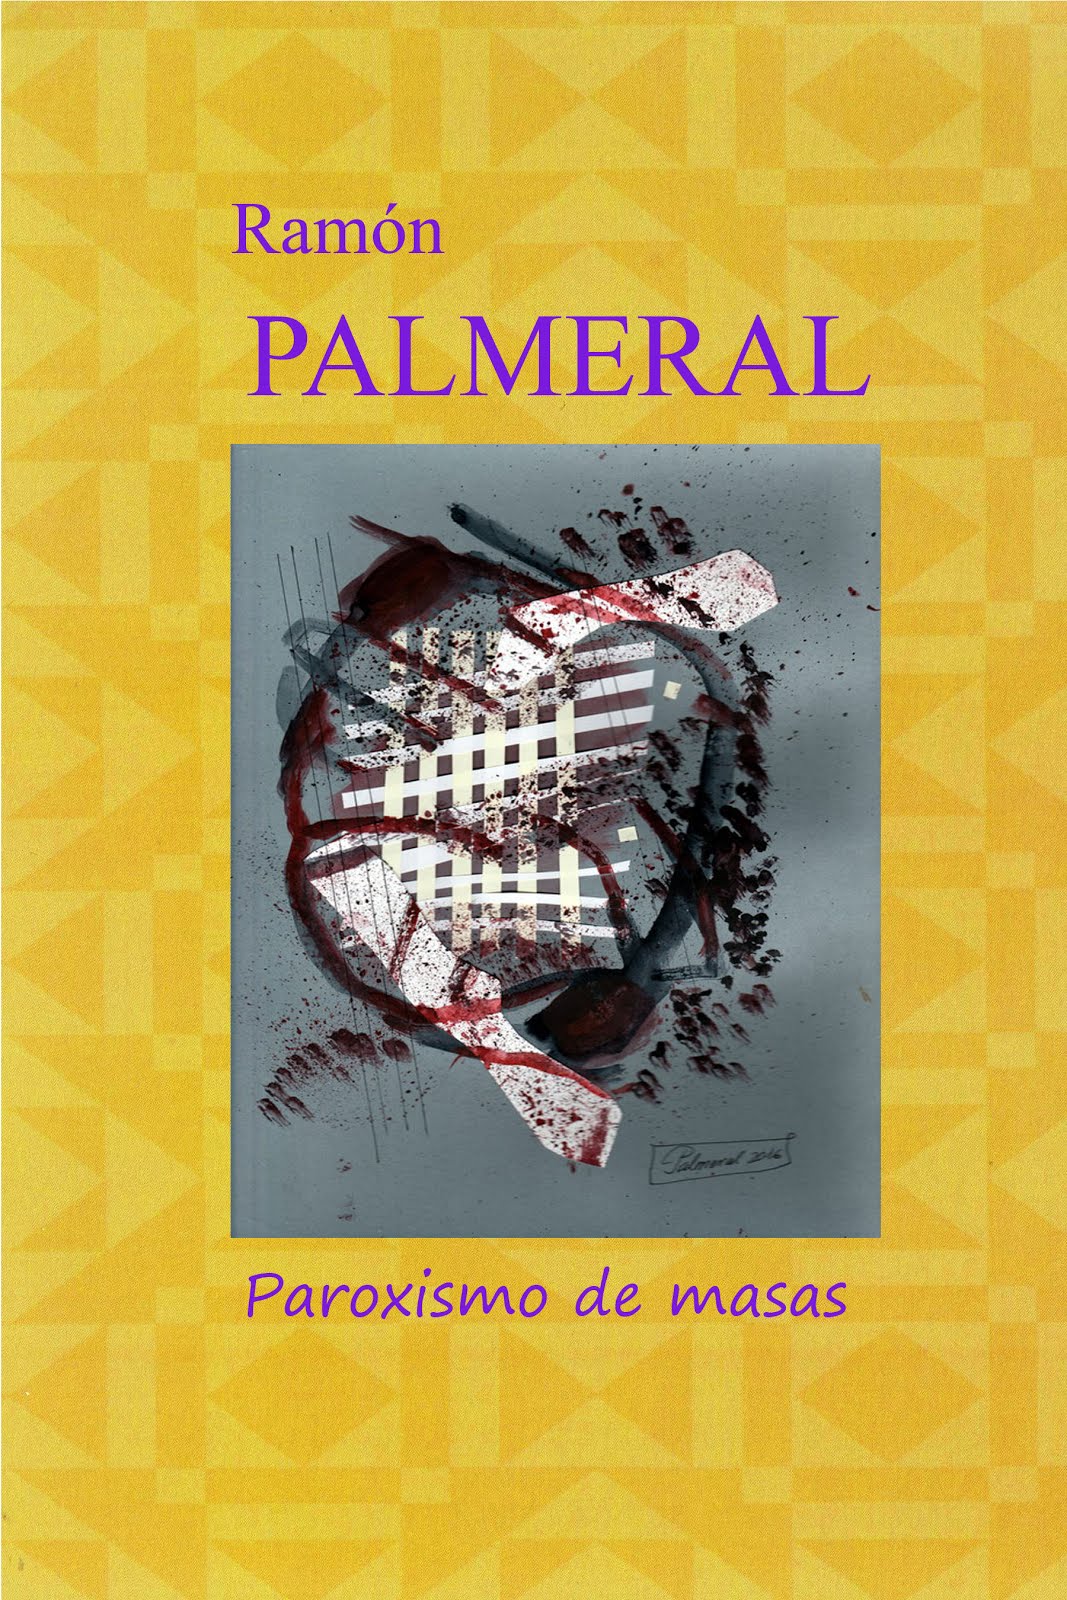 Libro de autor. Ramón PALMERAL